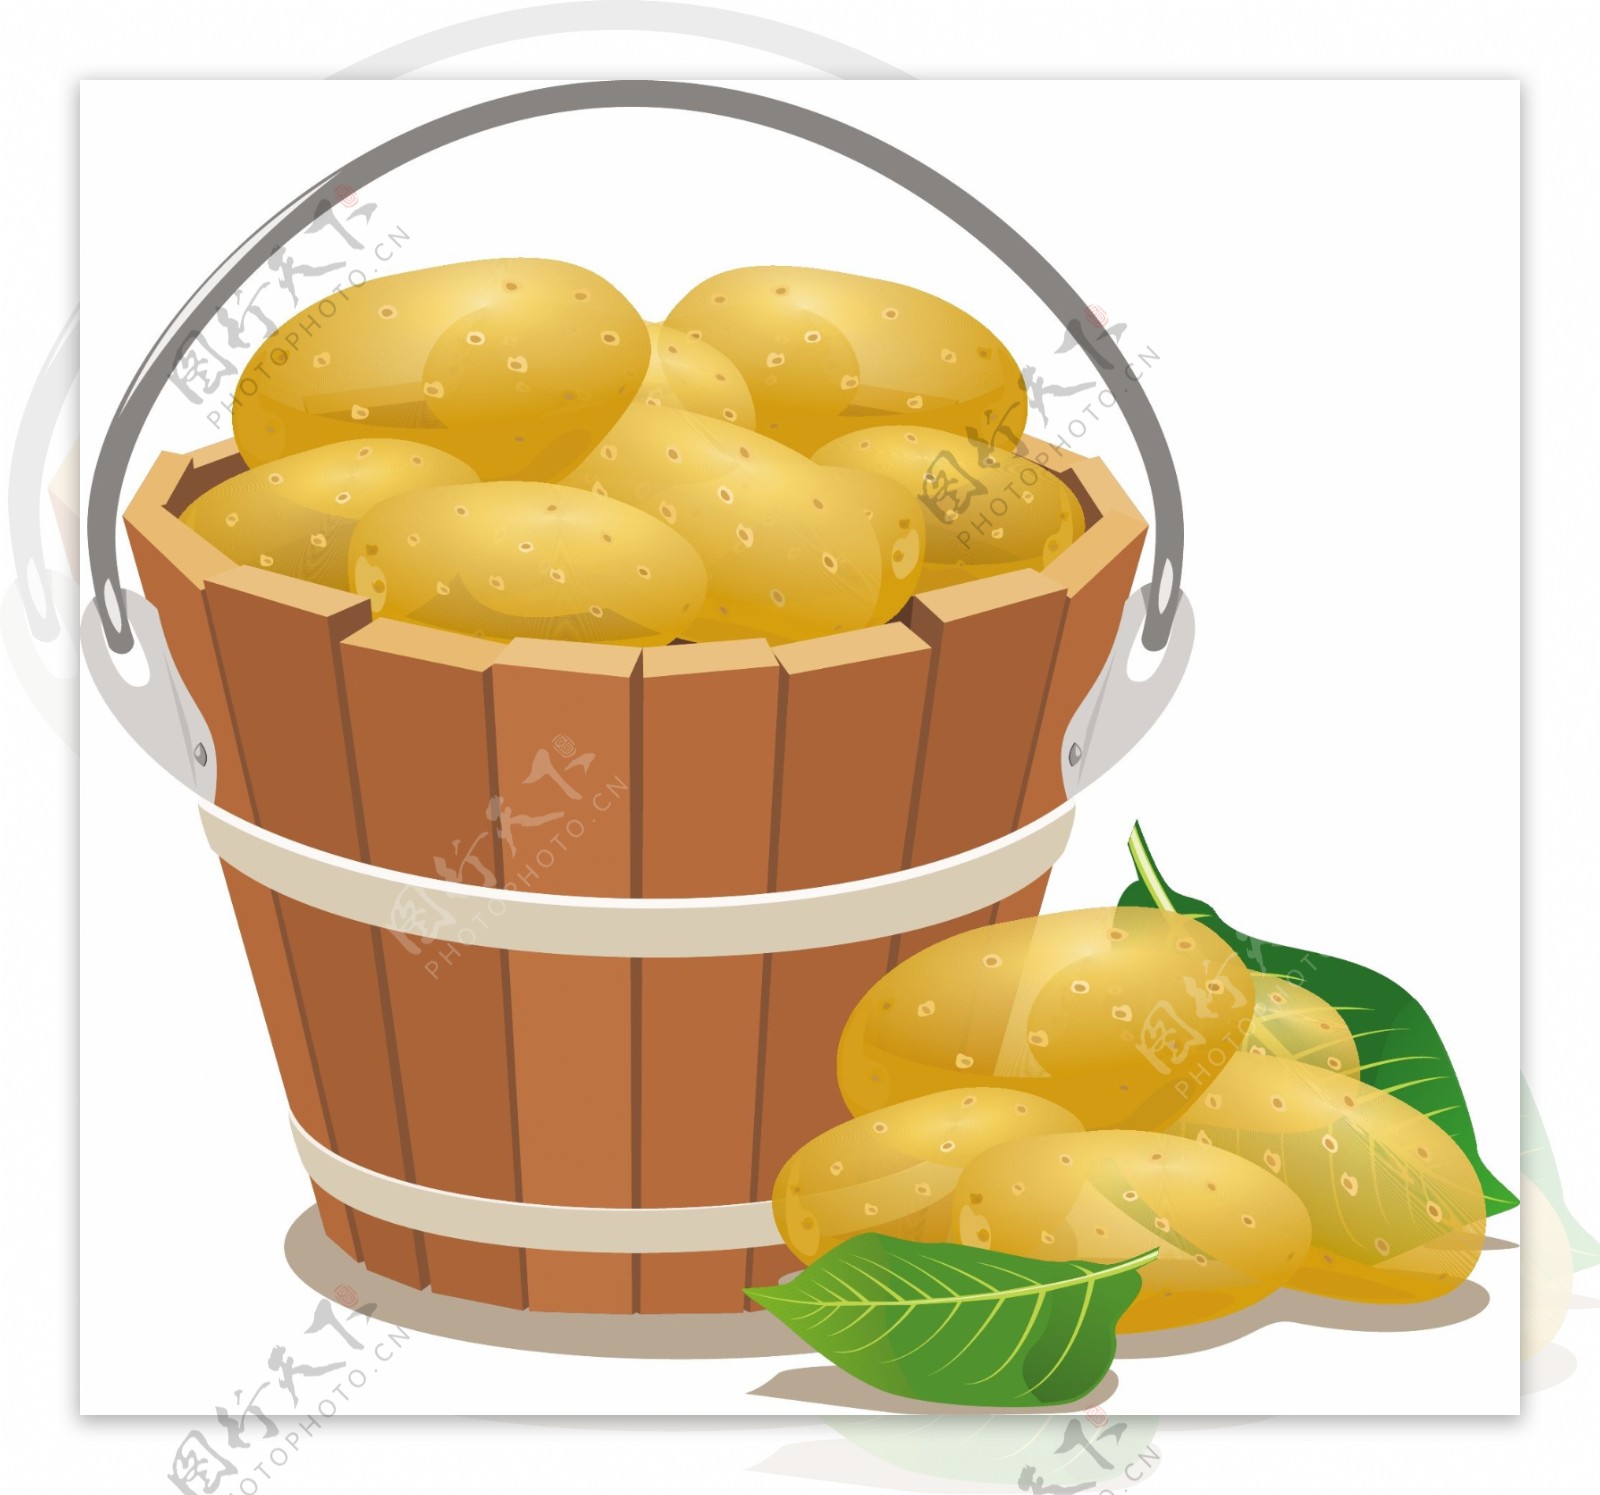 马铃薯图片